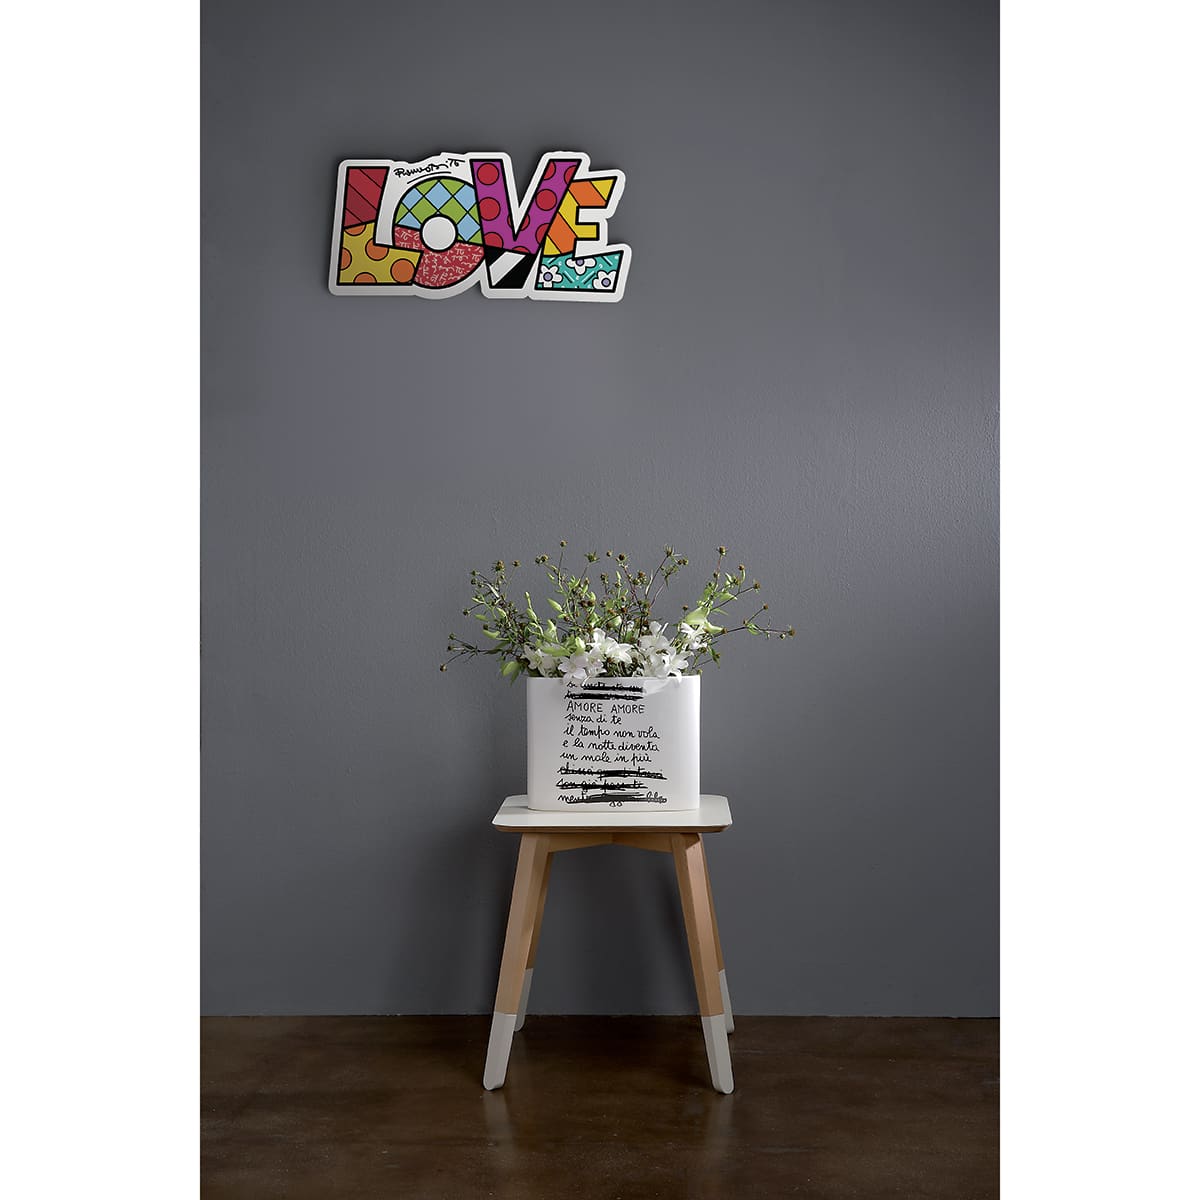 la scritta "love" in stile street art è appesa come elemento decorativo su una parete grigia, sopra ad un tavolino con un vaso di fiori